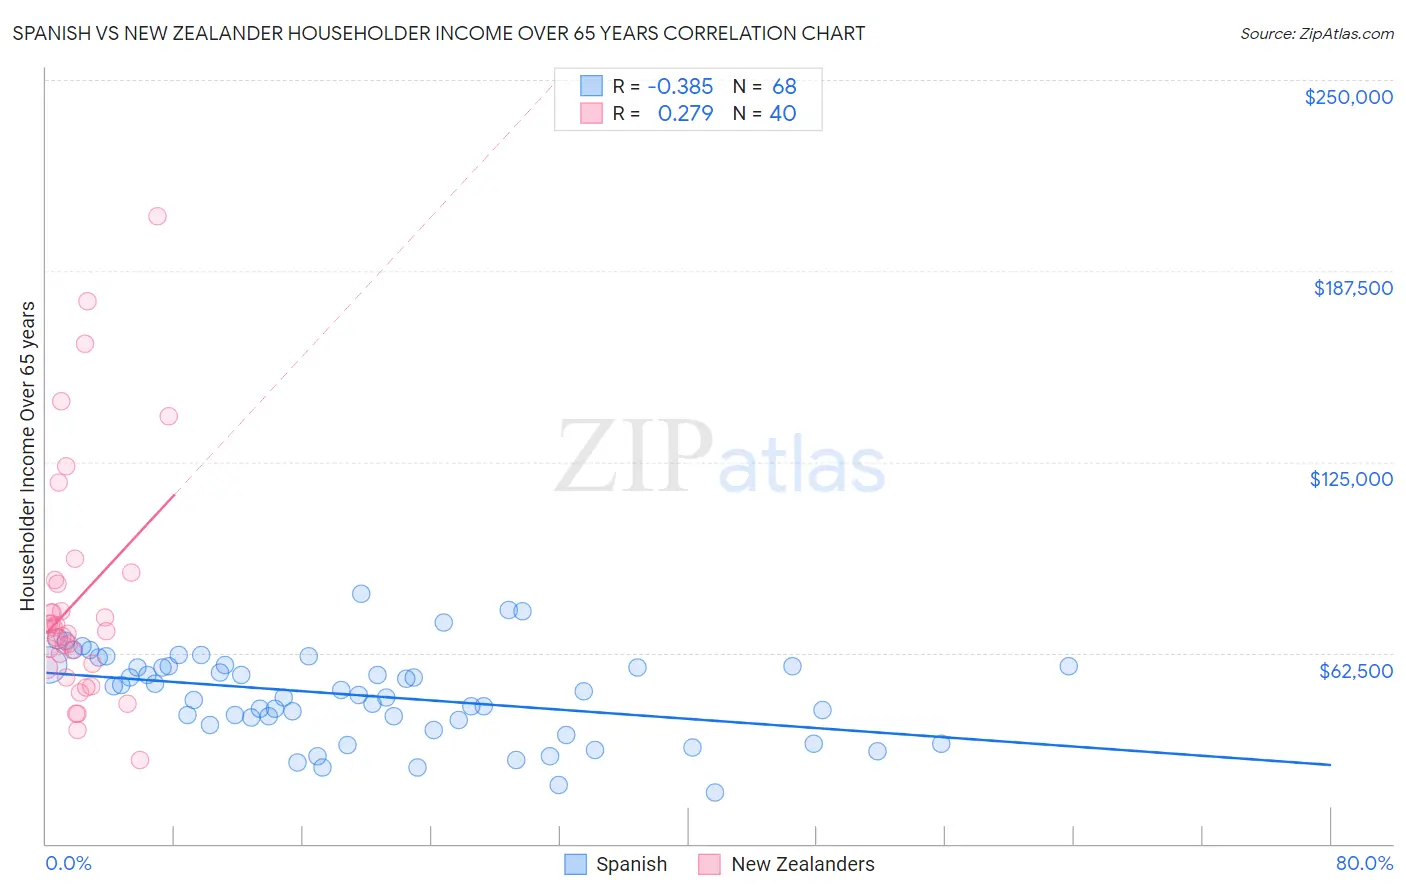 Spanish vs New Zealander Householder Income Over 65 years